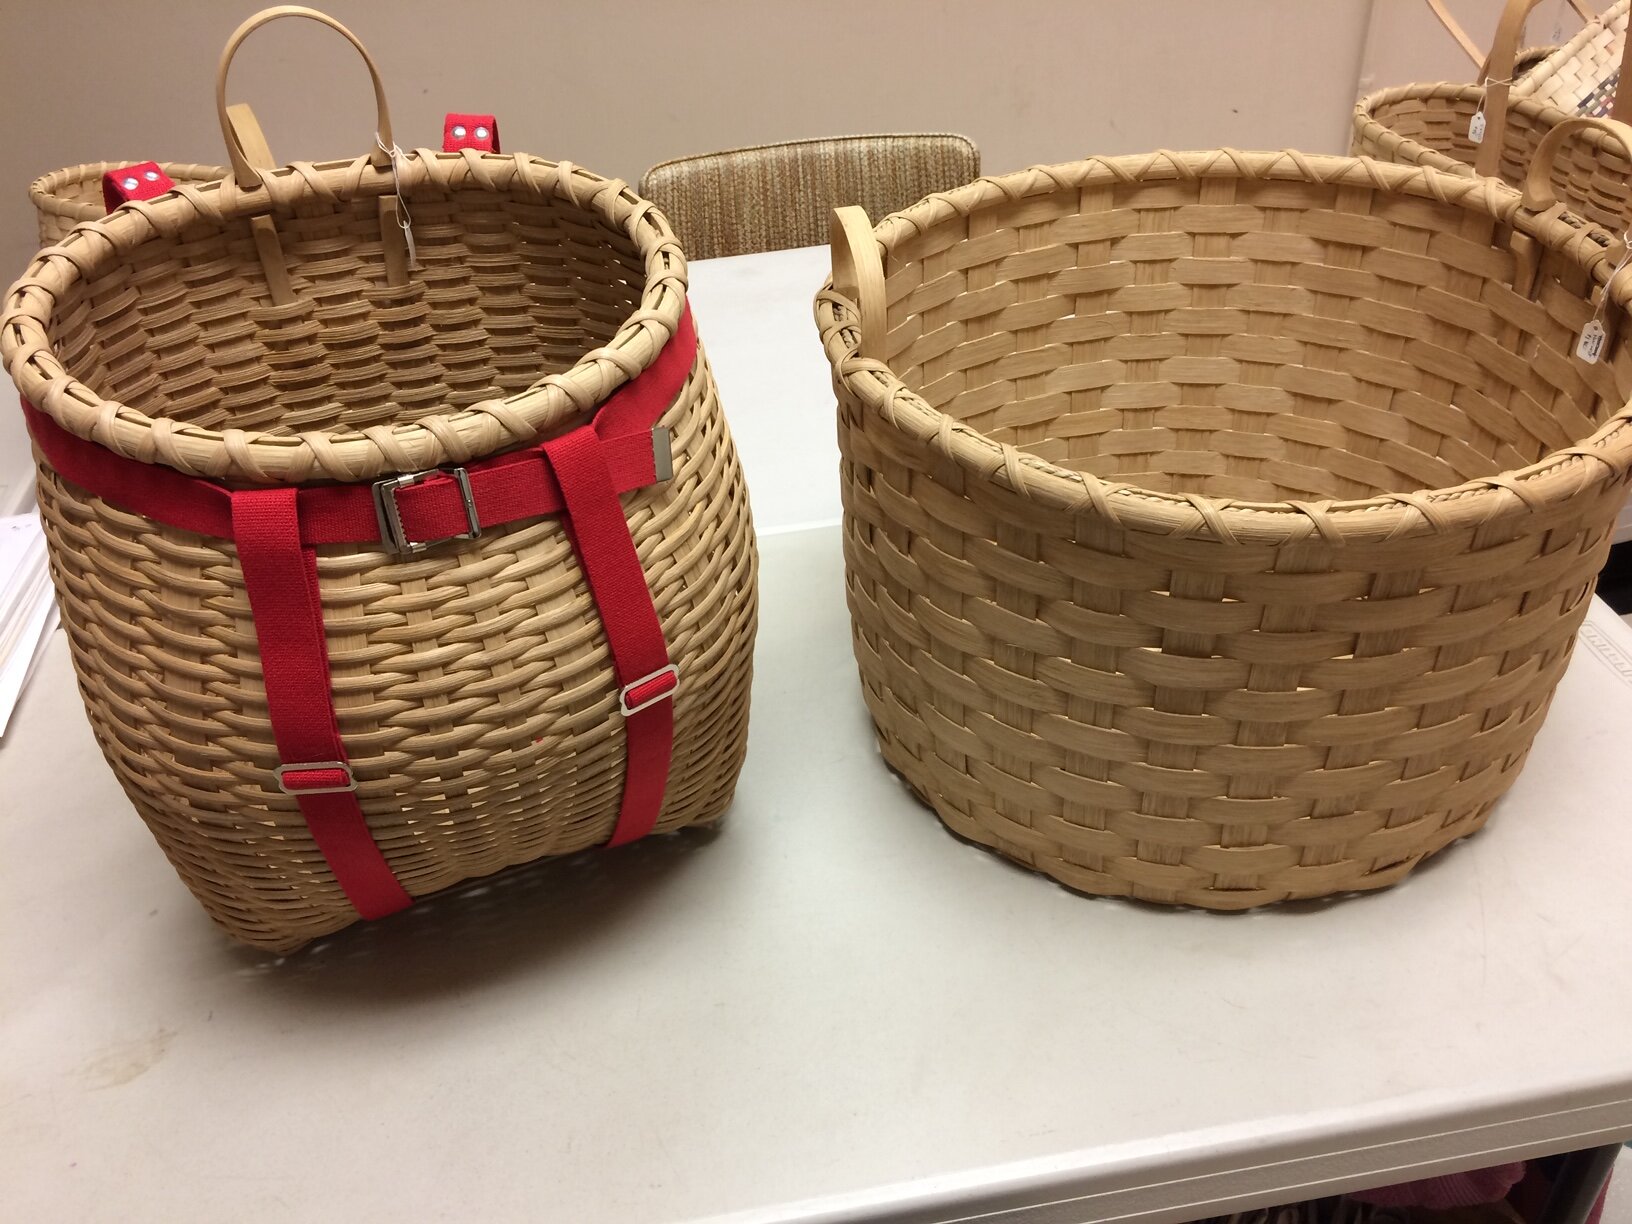 Ruth Boland-backpack and harvest basket.JPG